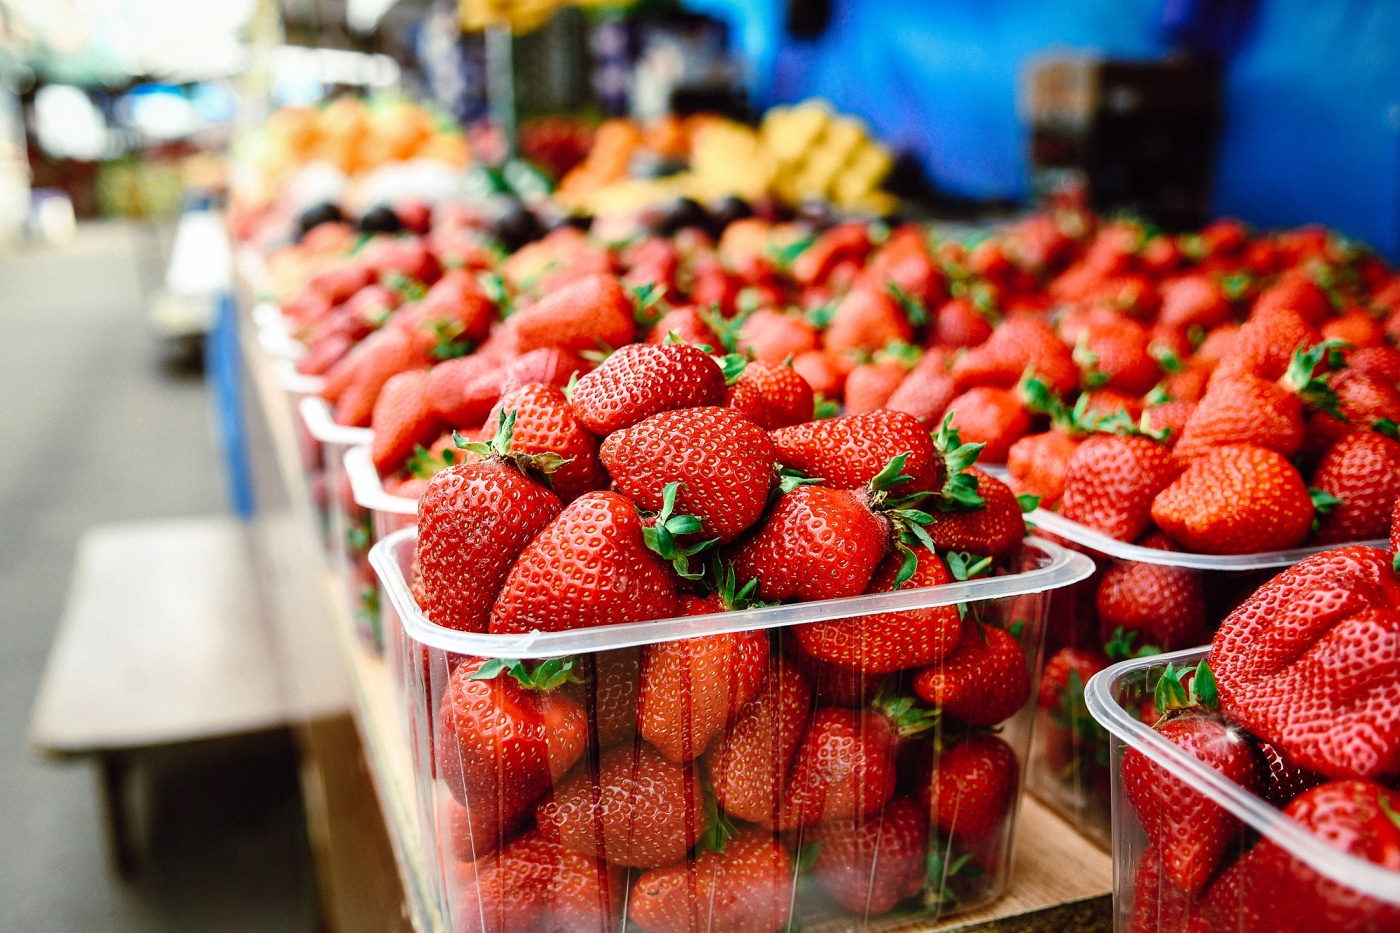 Цены "кусаются": откуда в Украину весной завозят фрукты и ягоды